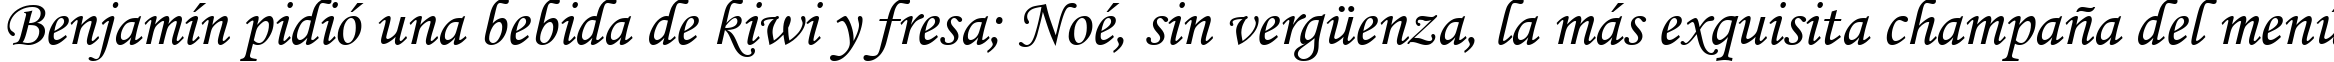 Пример написания шрифтом Monotype Corsiva текста на испанском